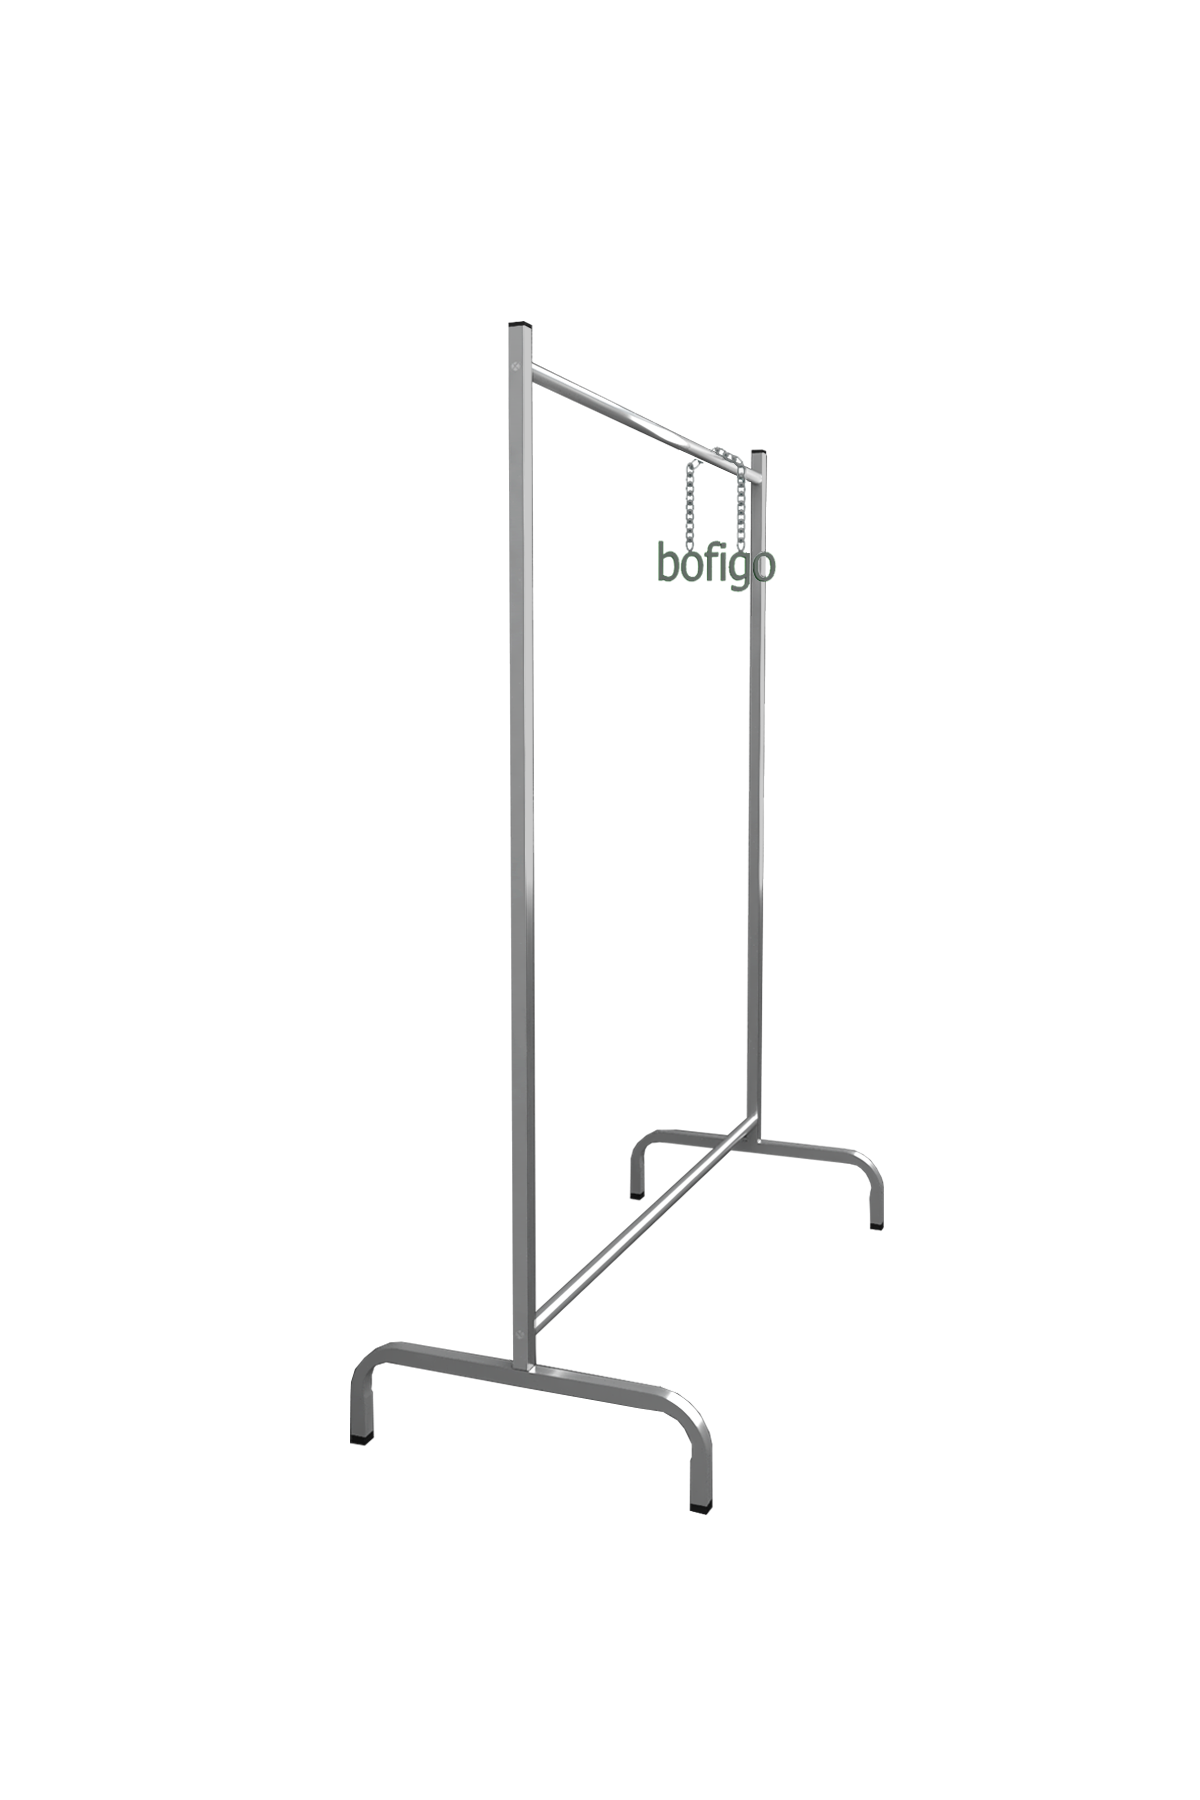 Bofigo Garment Hanger Pedestal Hanger Clothes Rack Metalic Grey